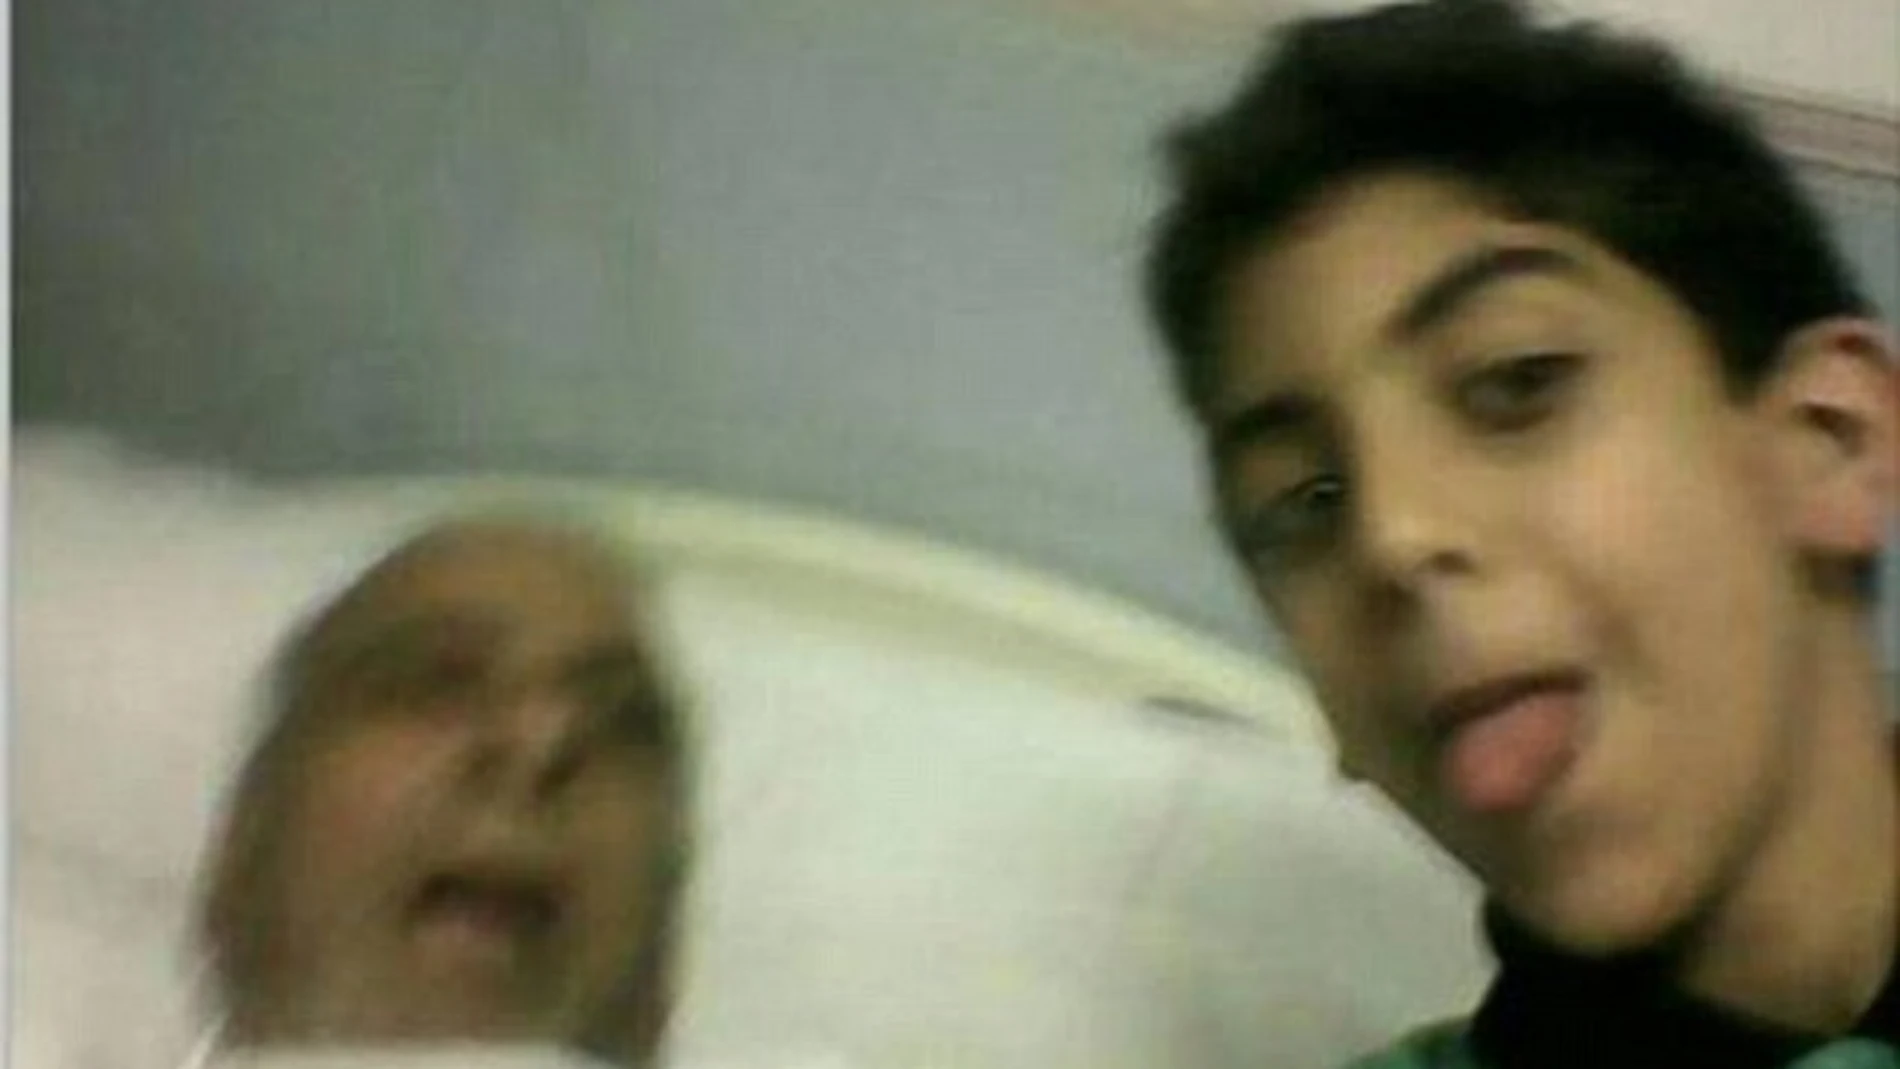 El joven saca la lengua para posar junto al cadáver de su abuelo